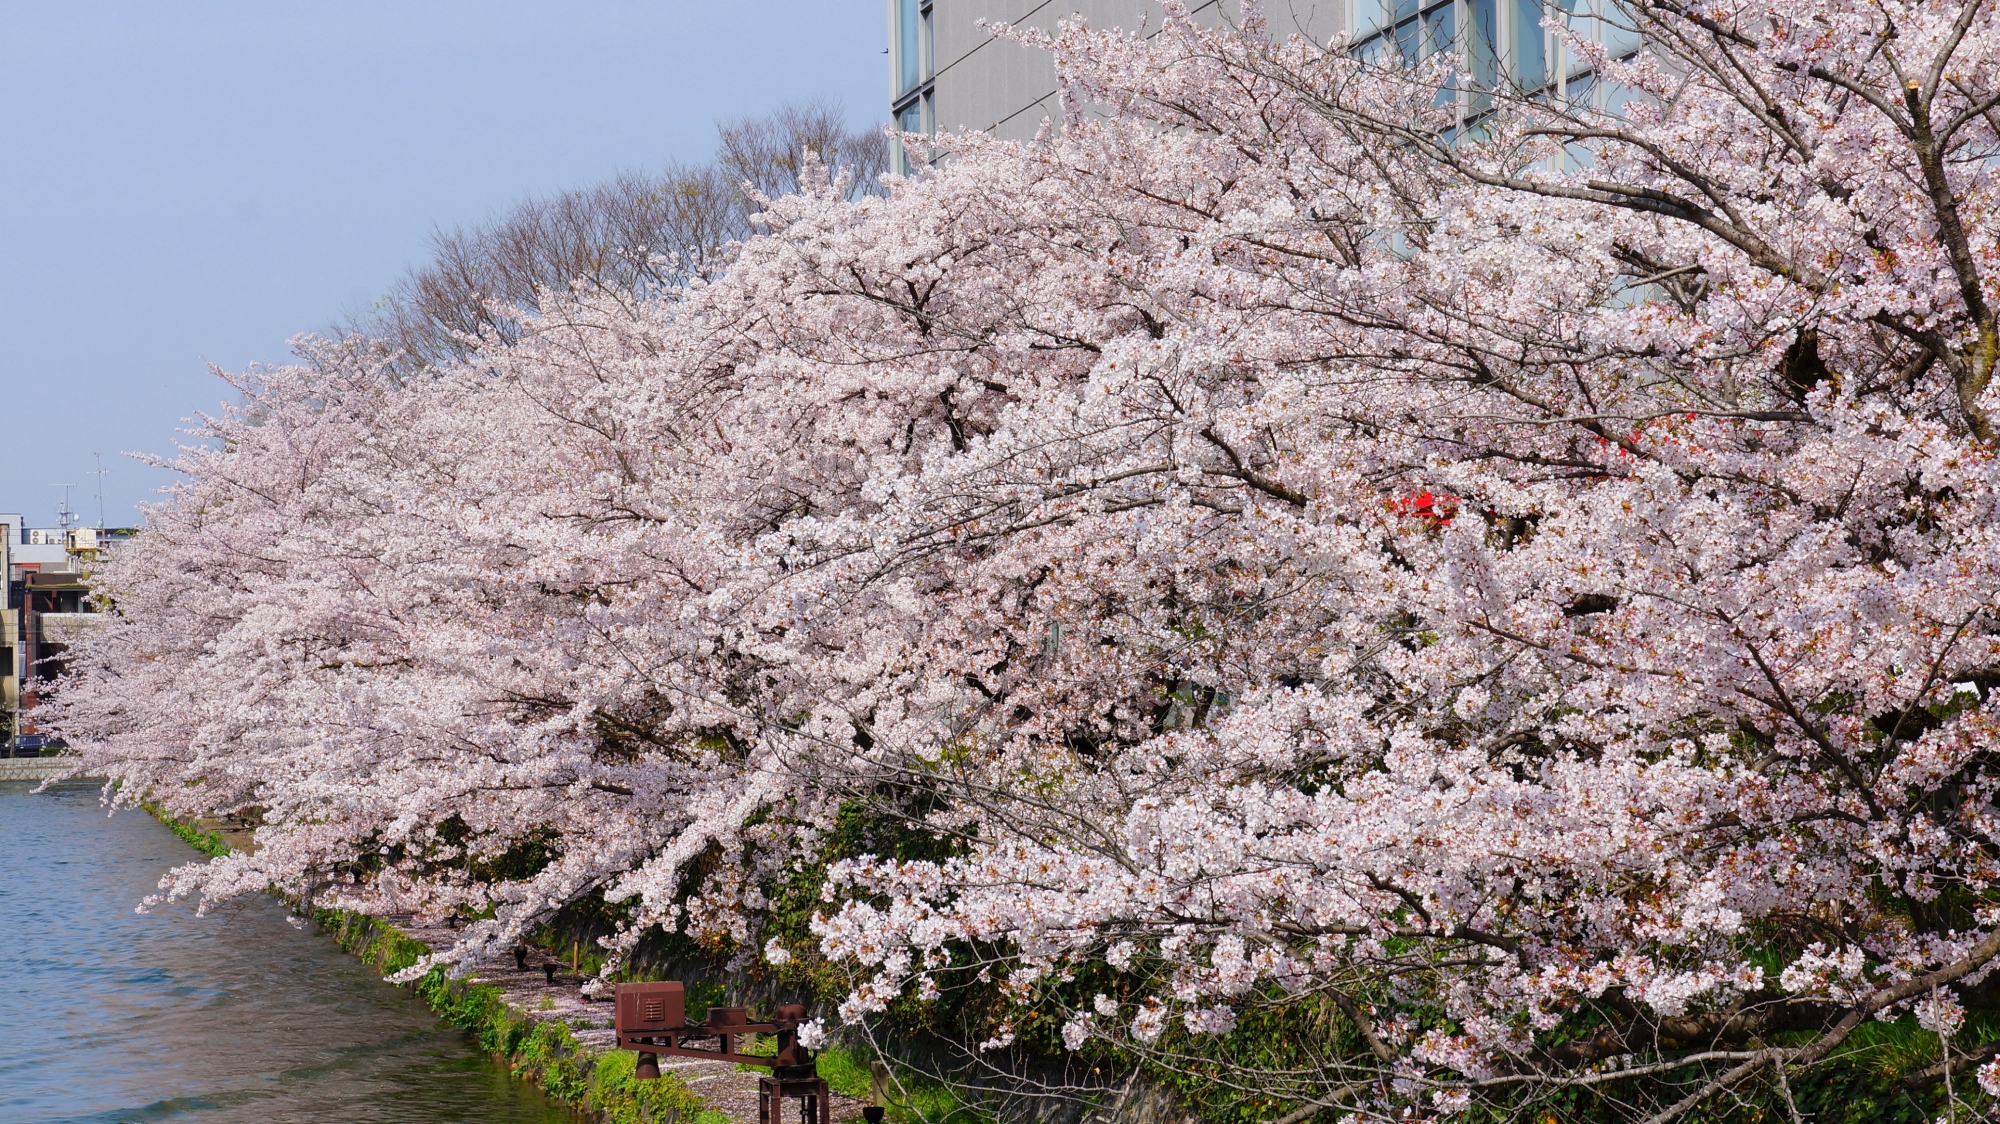 桜の花が弾け飛びそうな満開